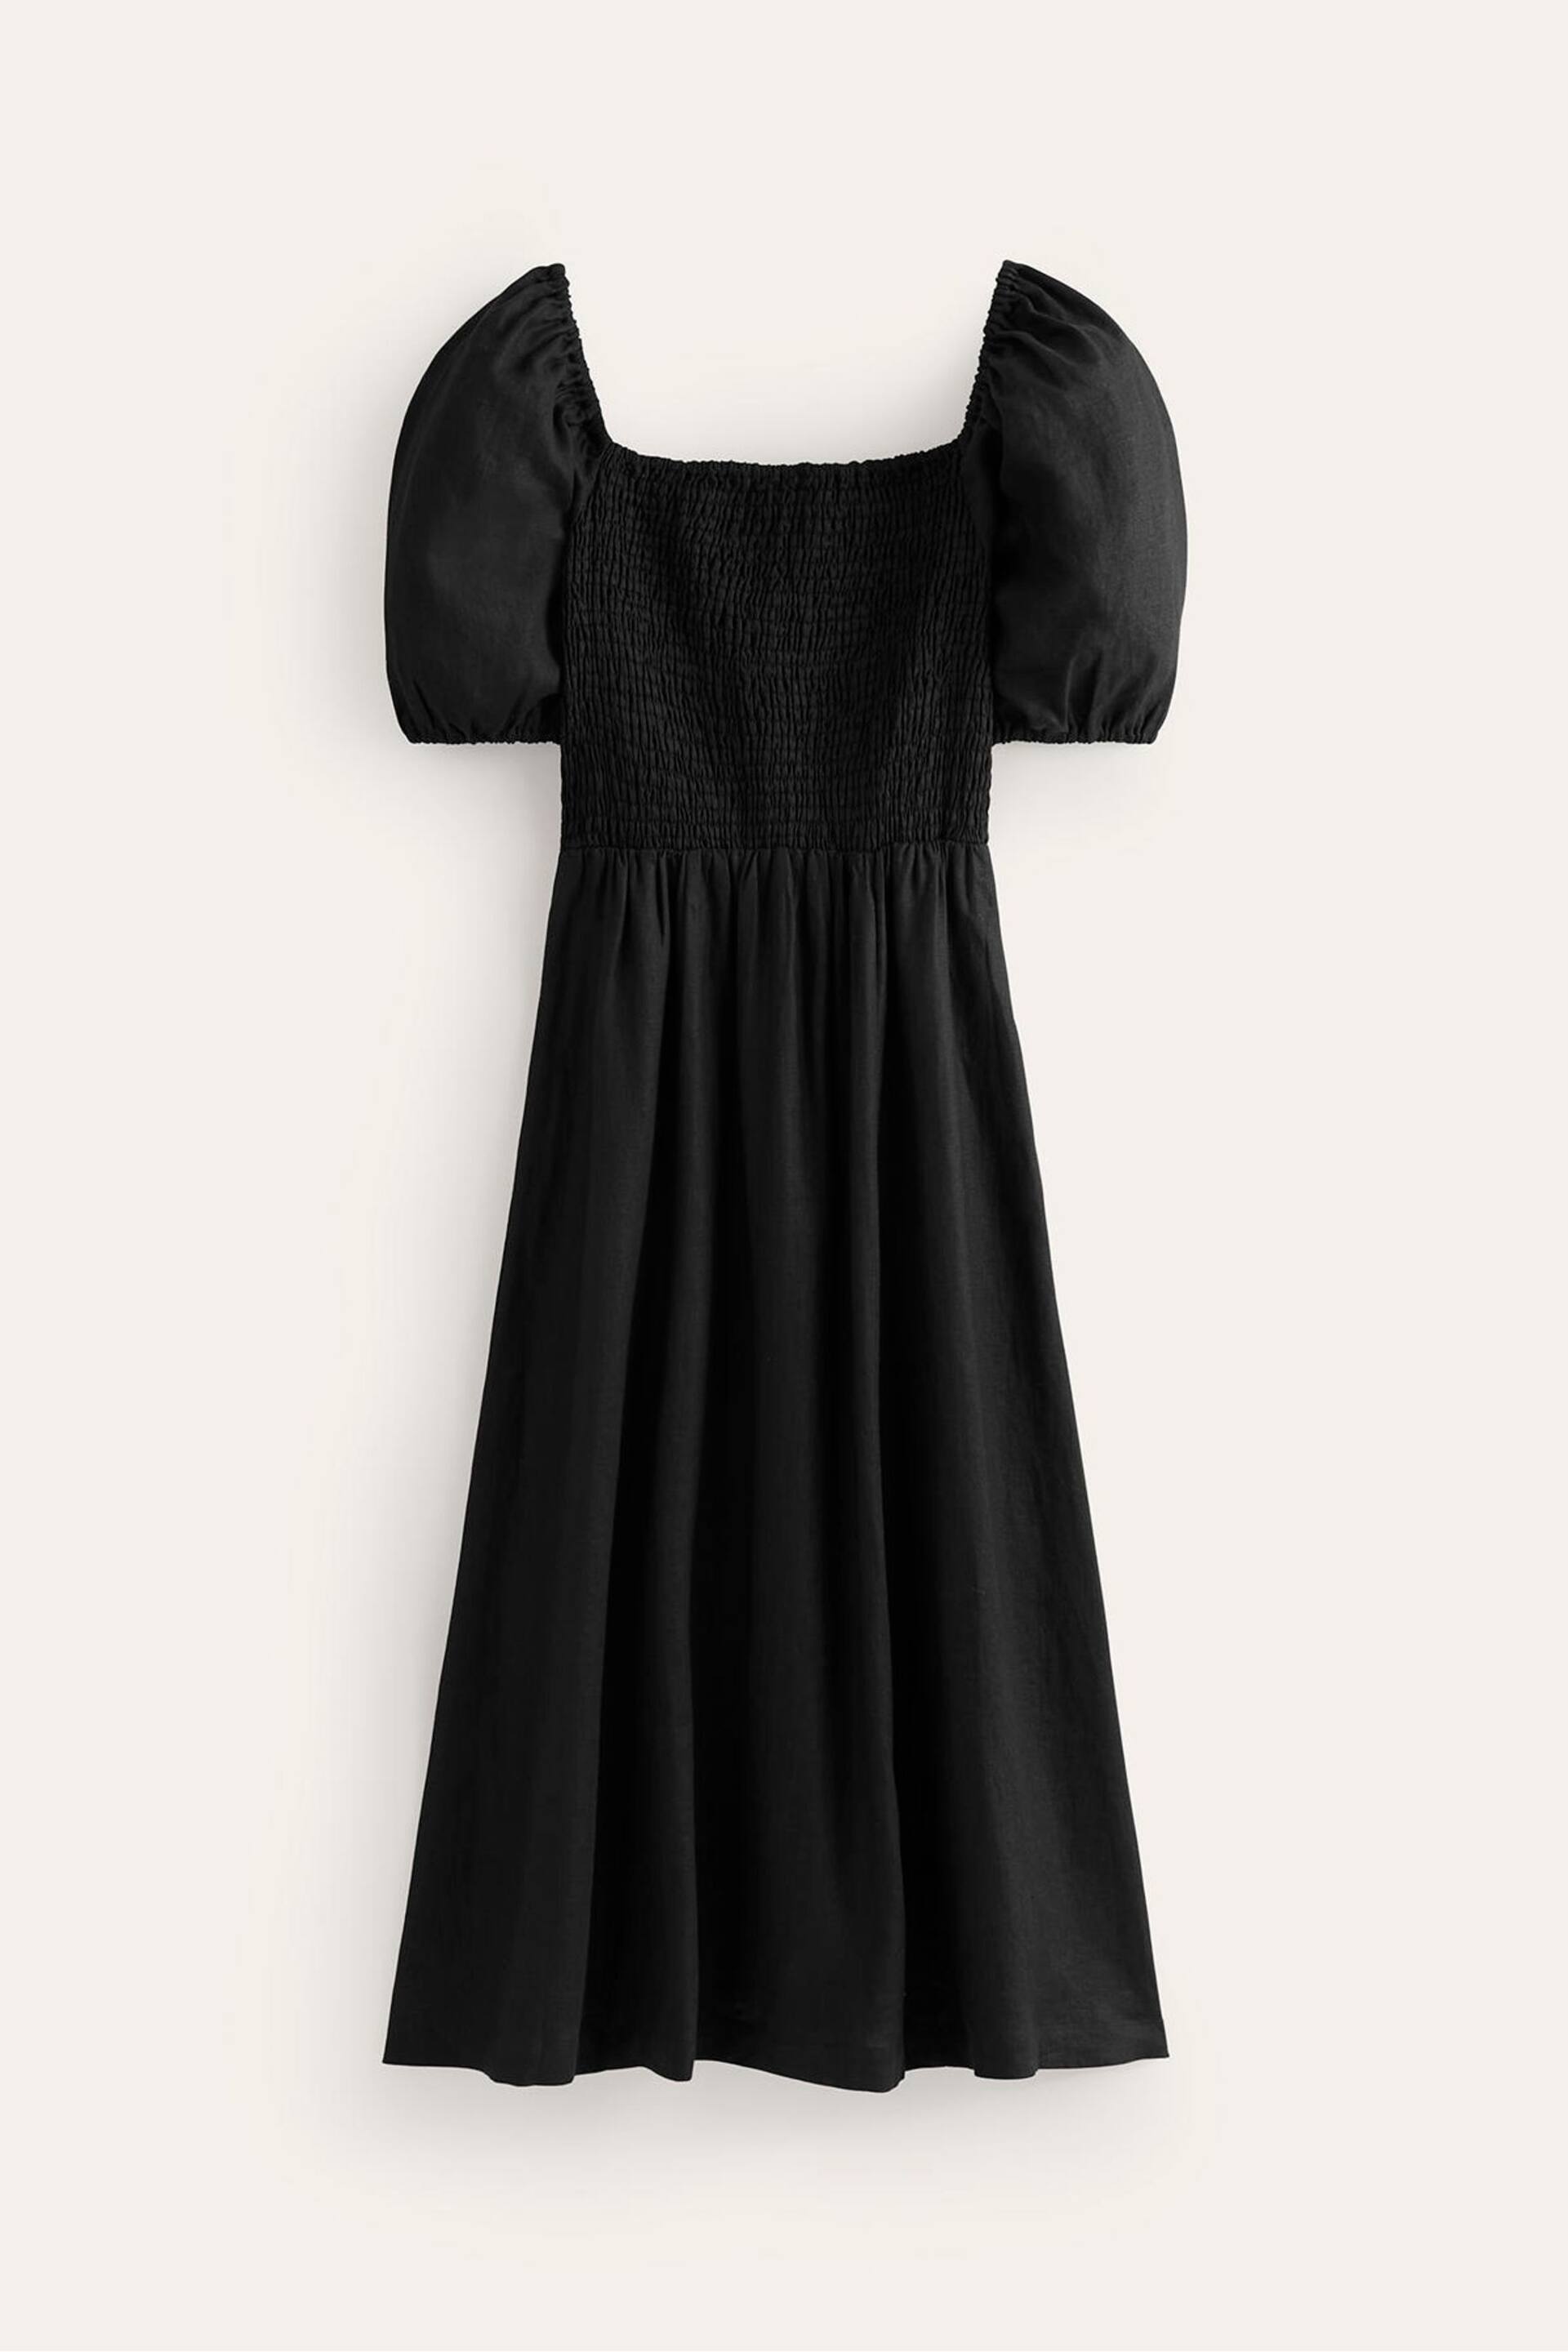 Boden Black Sky Smocked Linen Midi Dress - Image 5 of 5